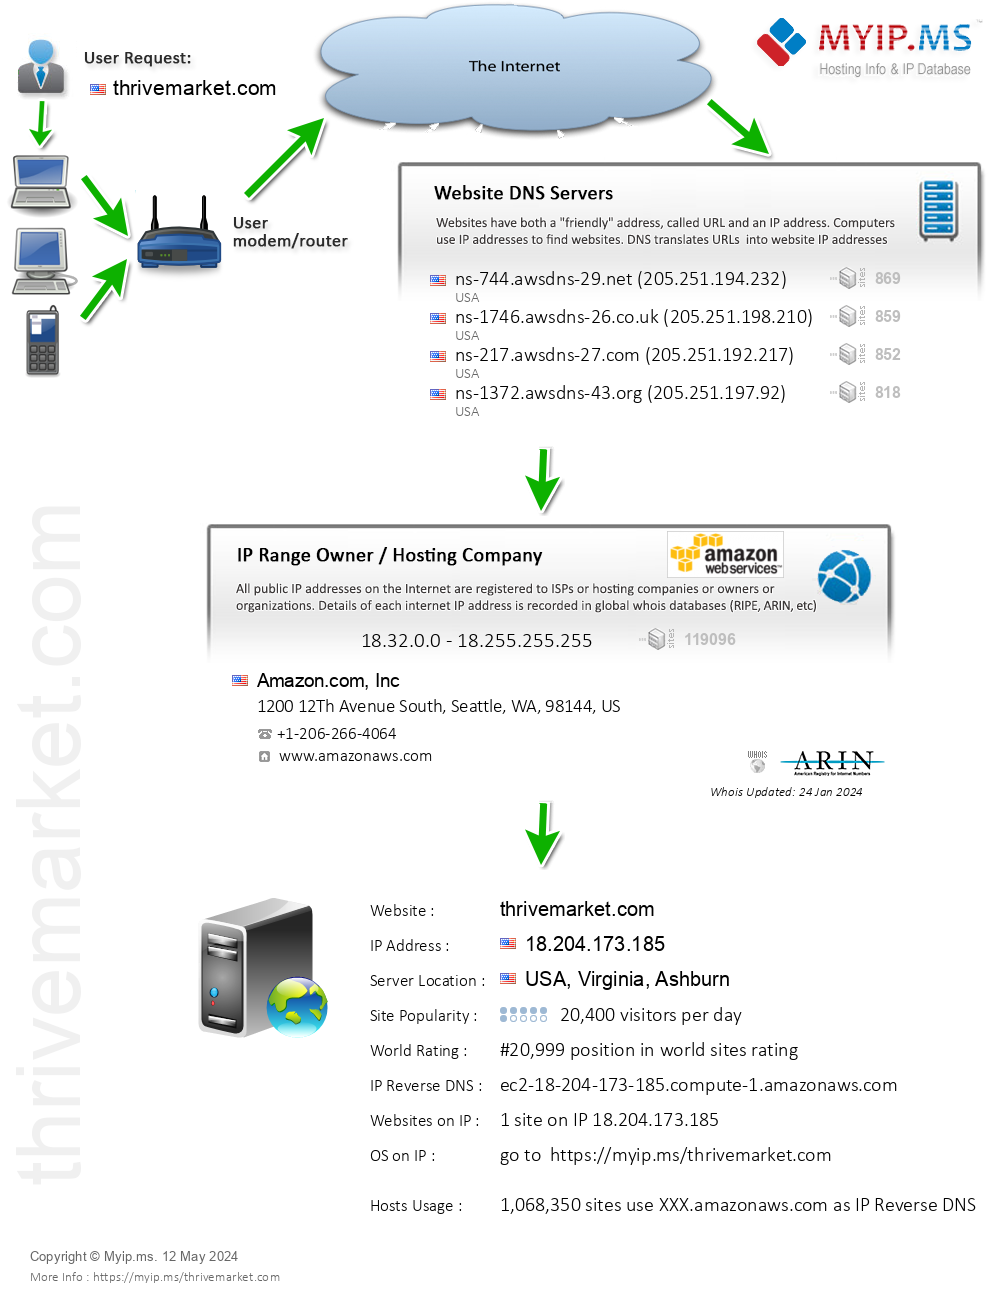 Thrivemarket.com - Website Hosting Visual IP Diagram